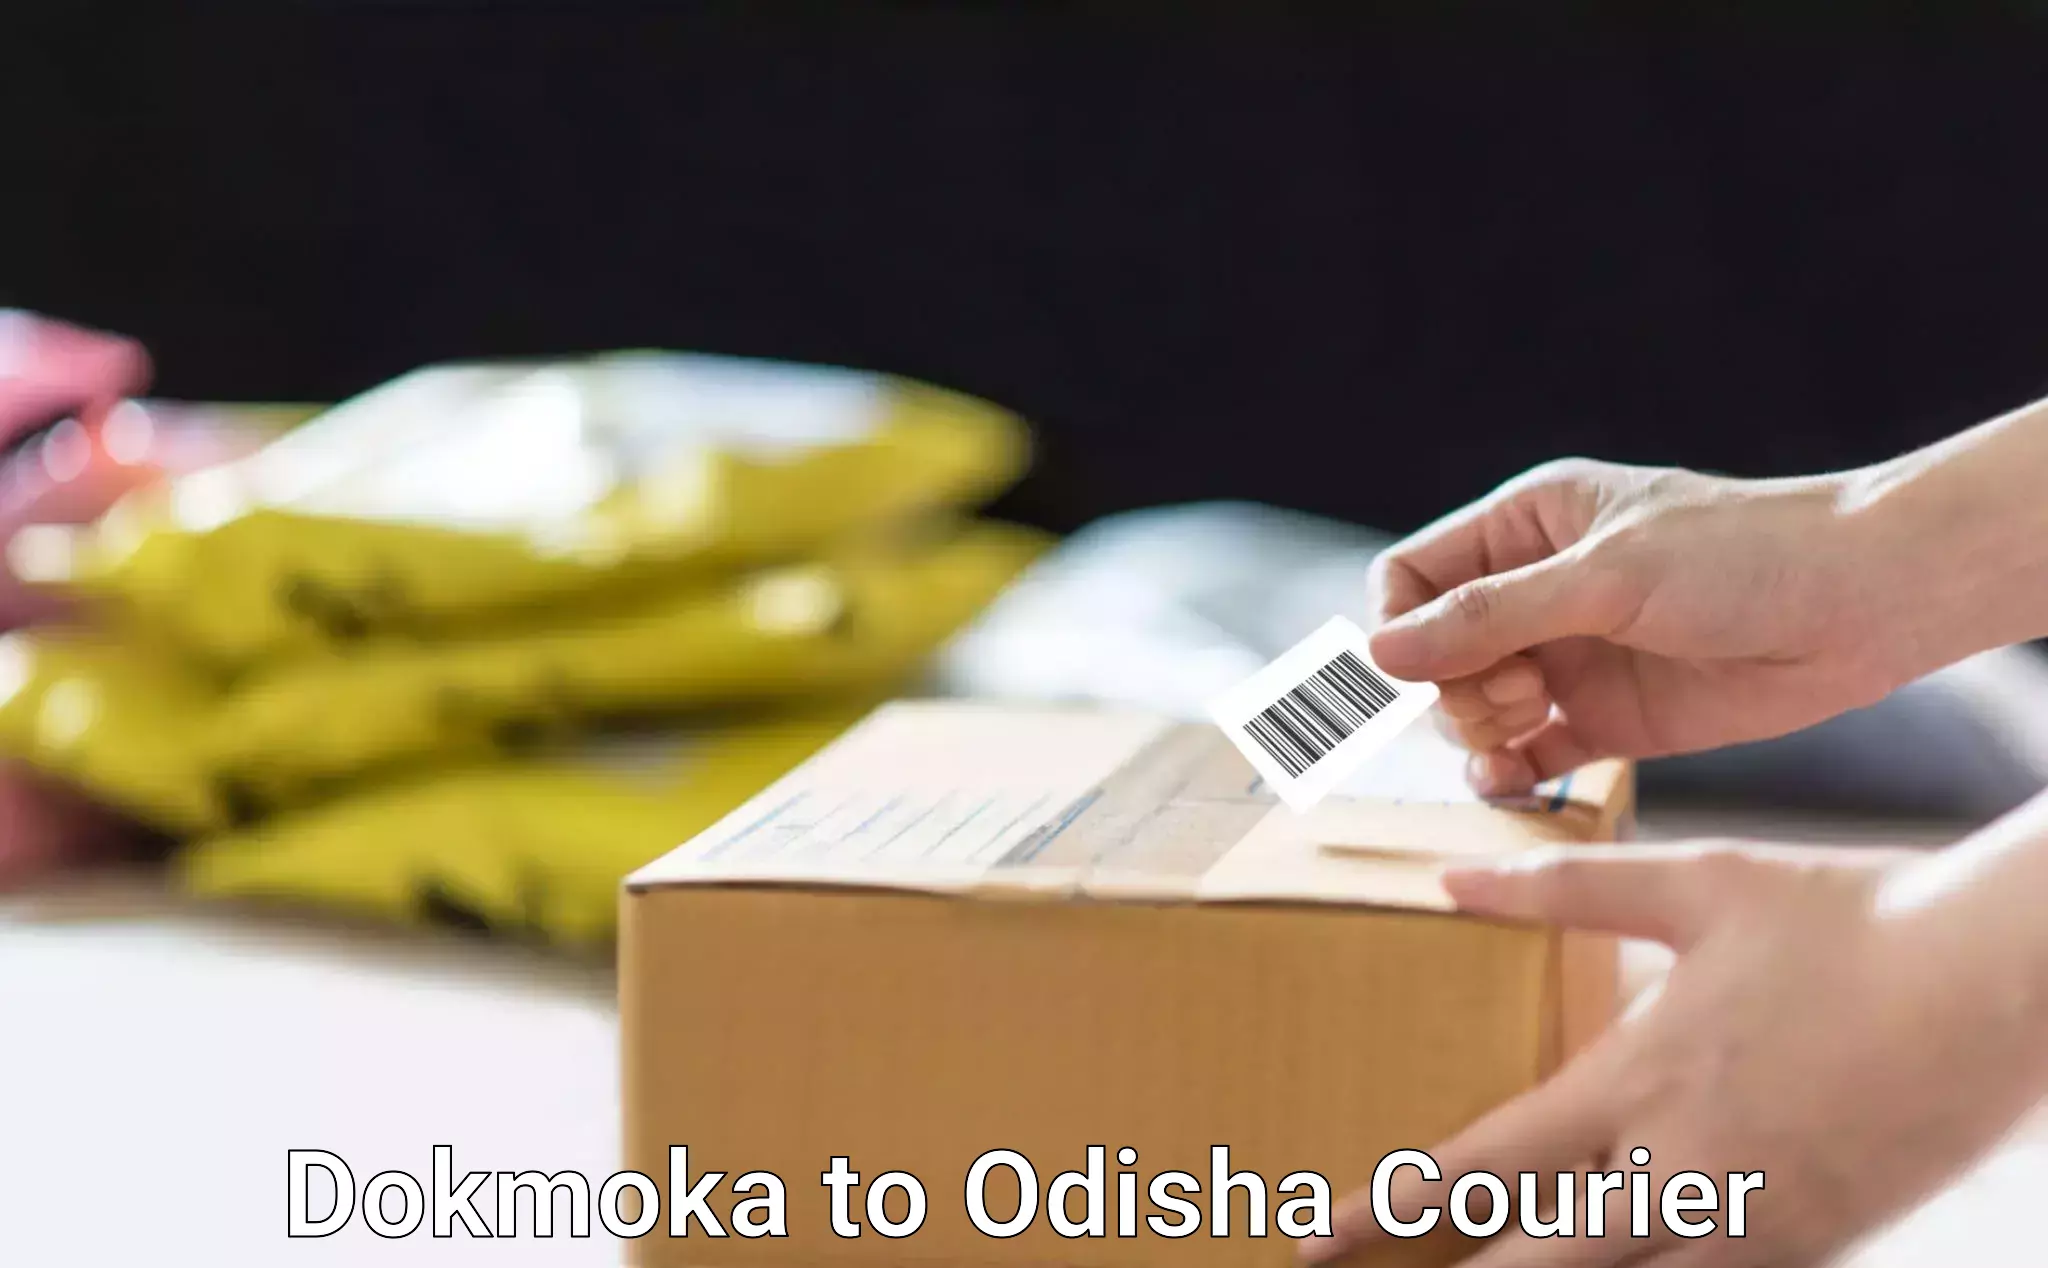 Next-day freight services Dokmoka to Odisha